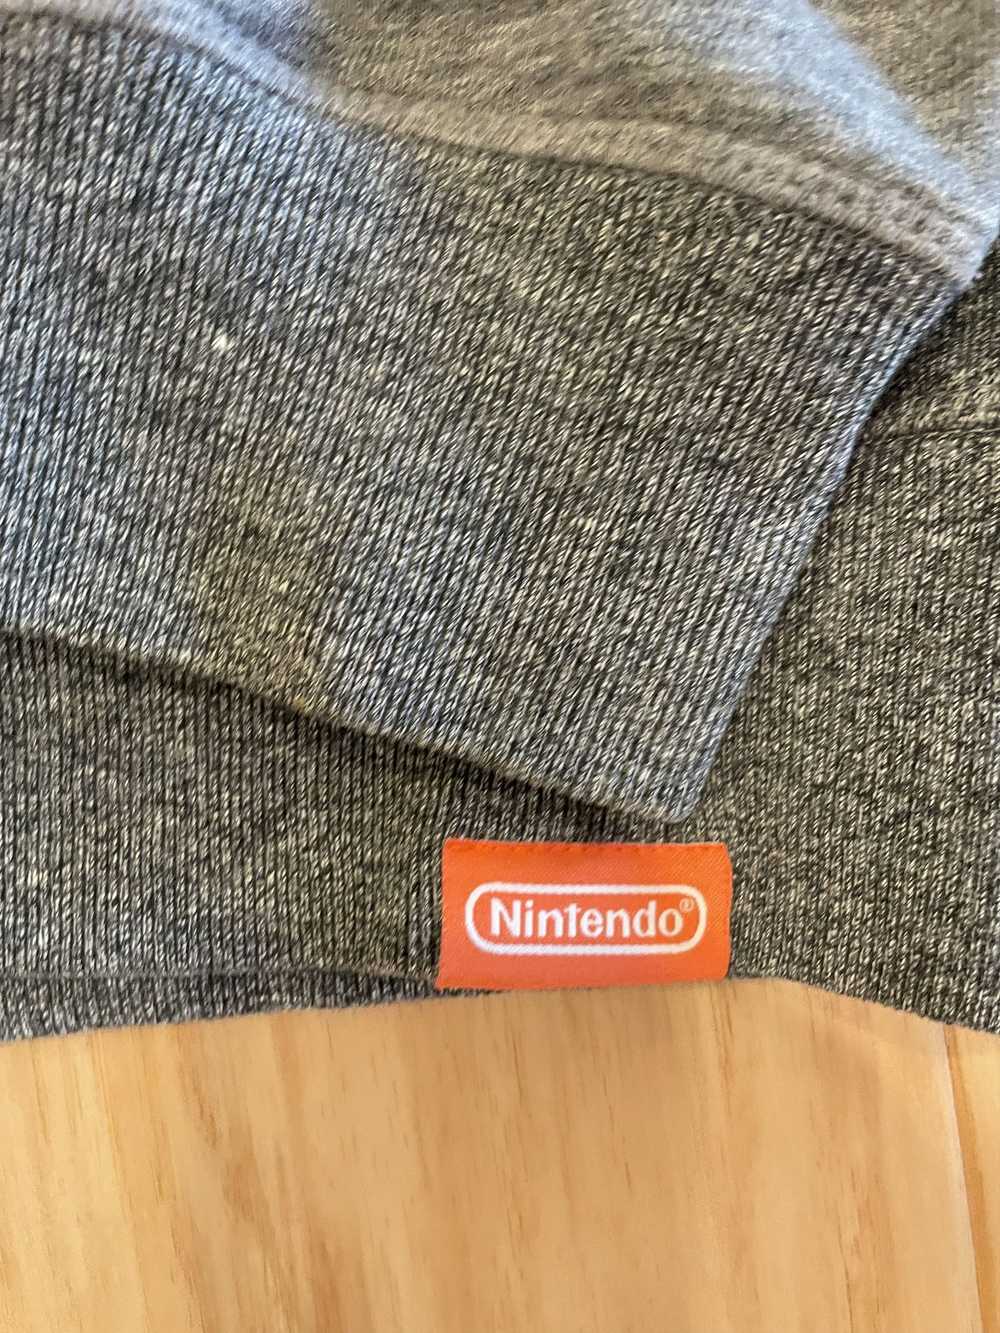 Nintendo Vintage Nintendo NYC Sweatshirt - Large - image 5